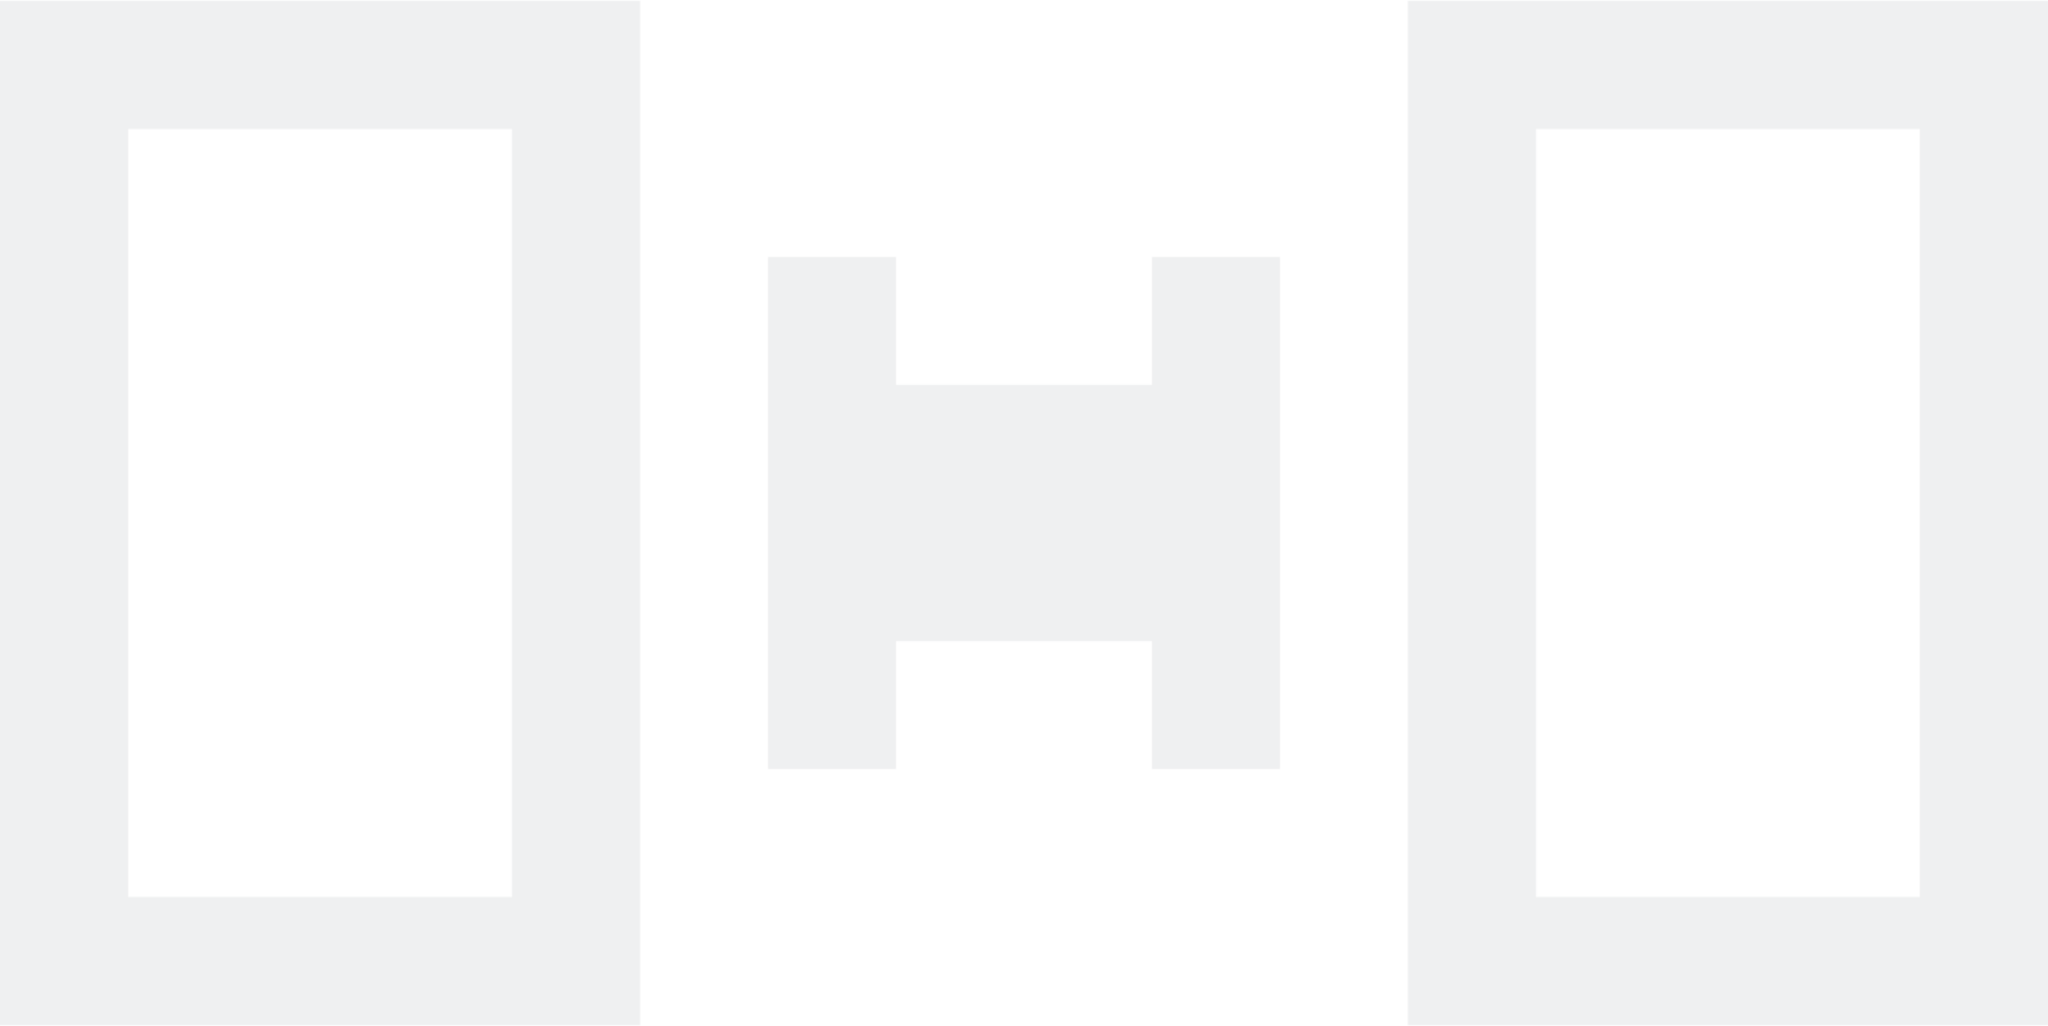 distribute horizontal icon